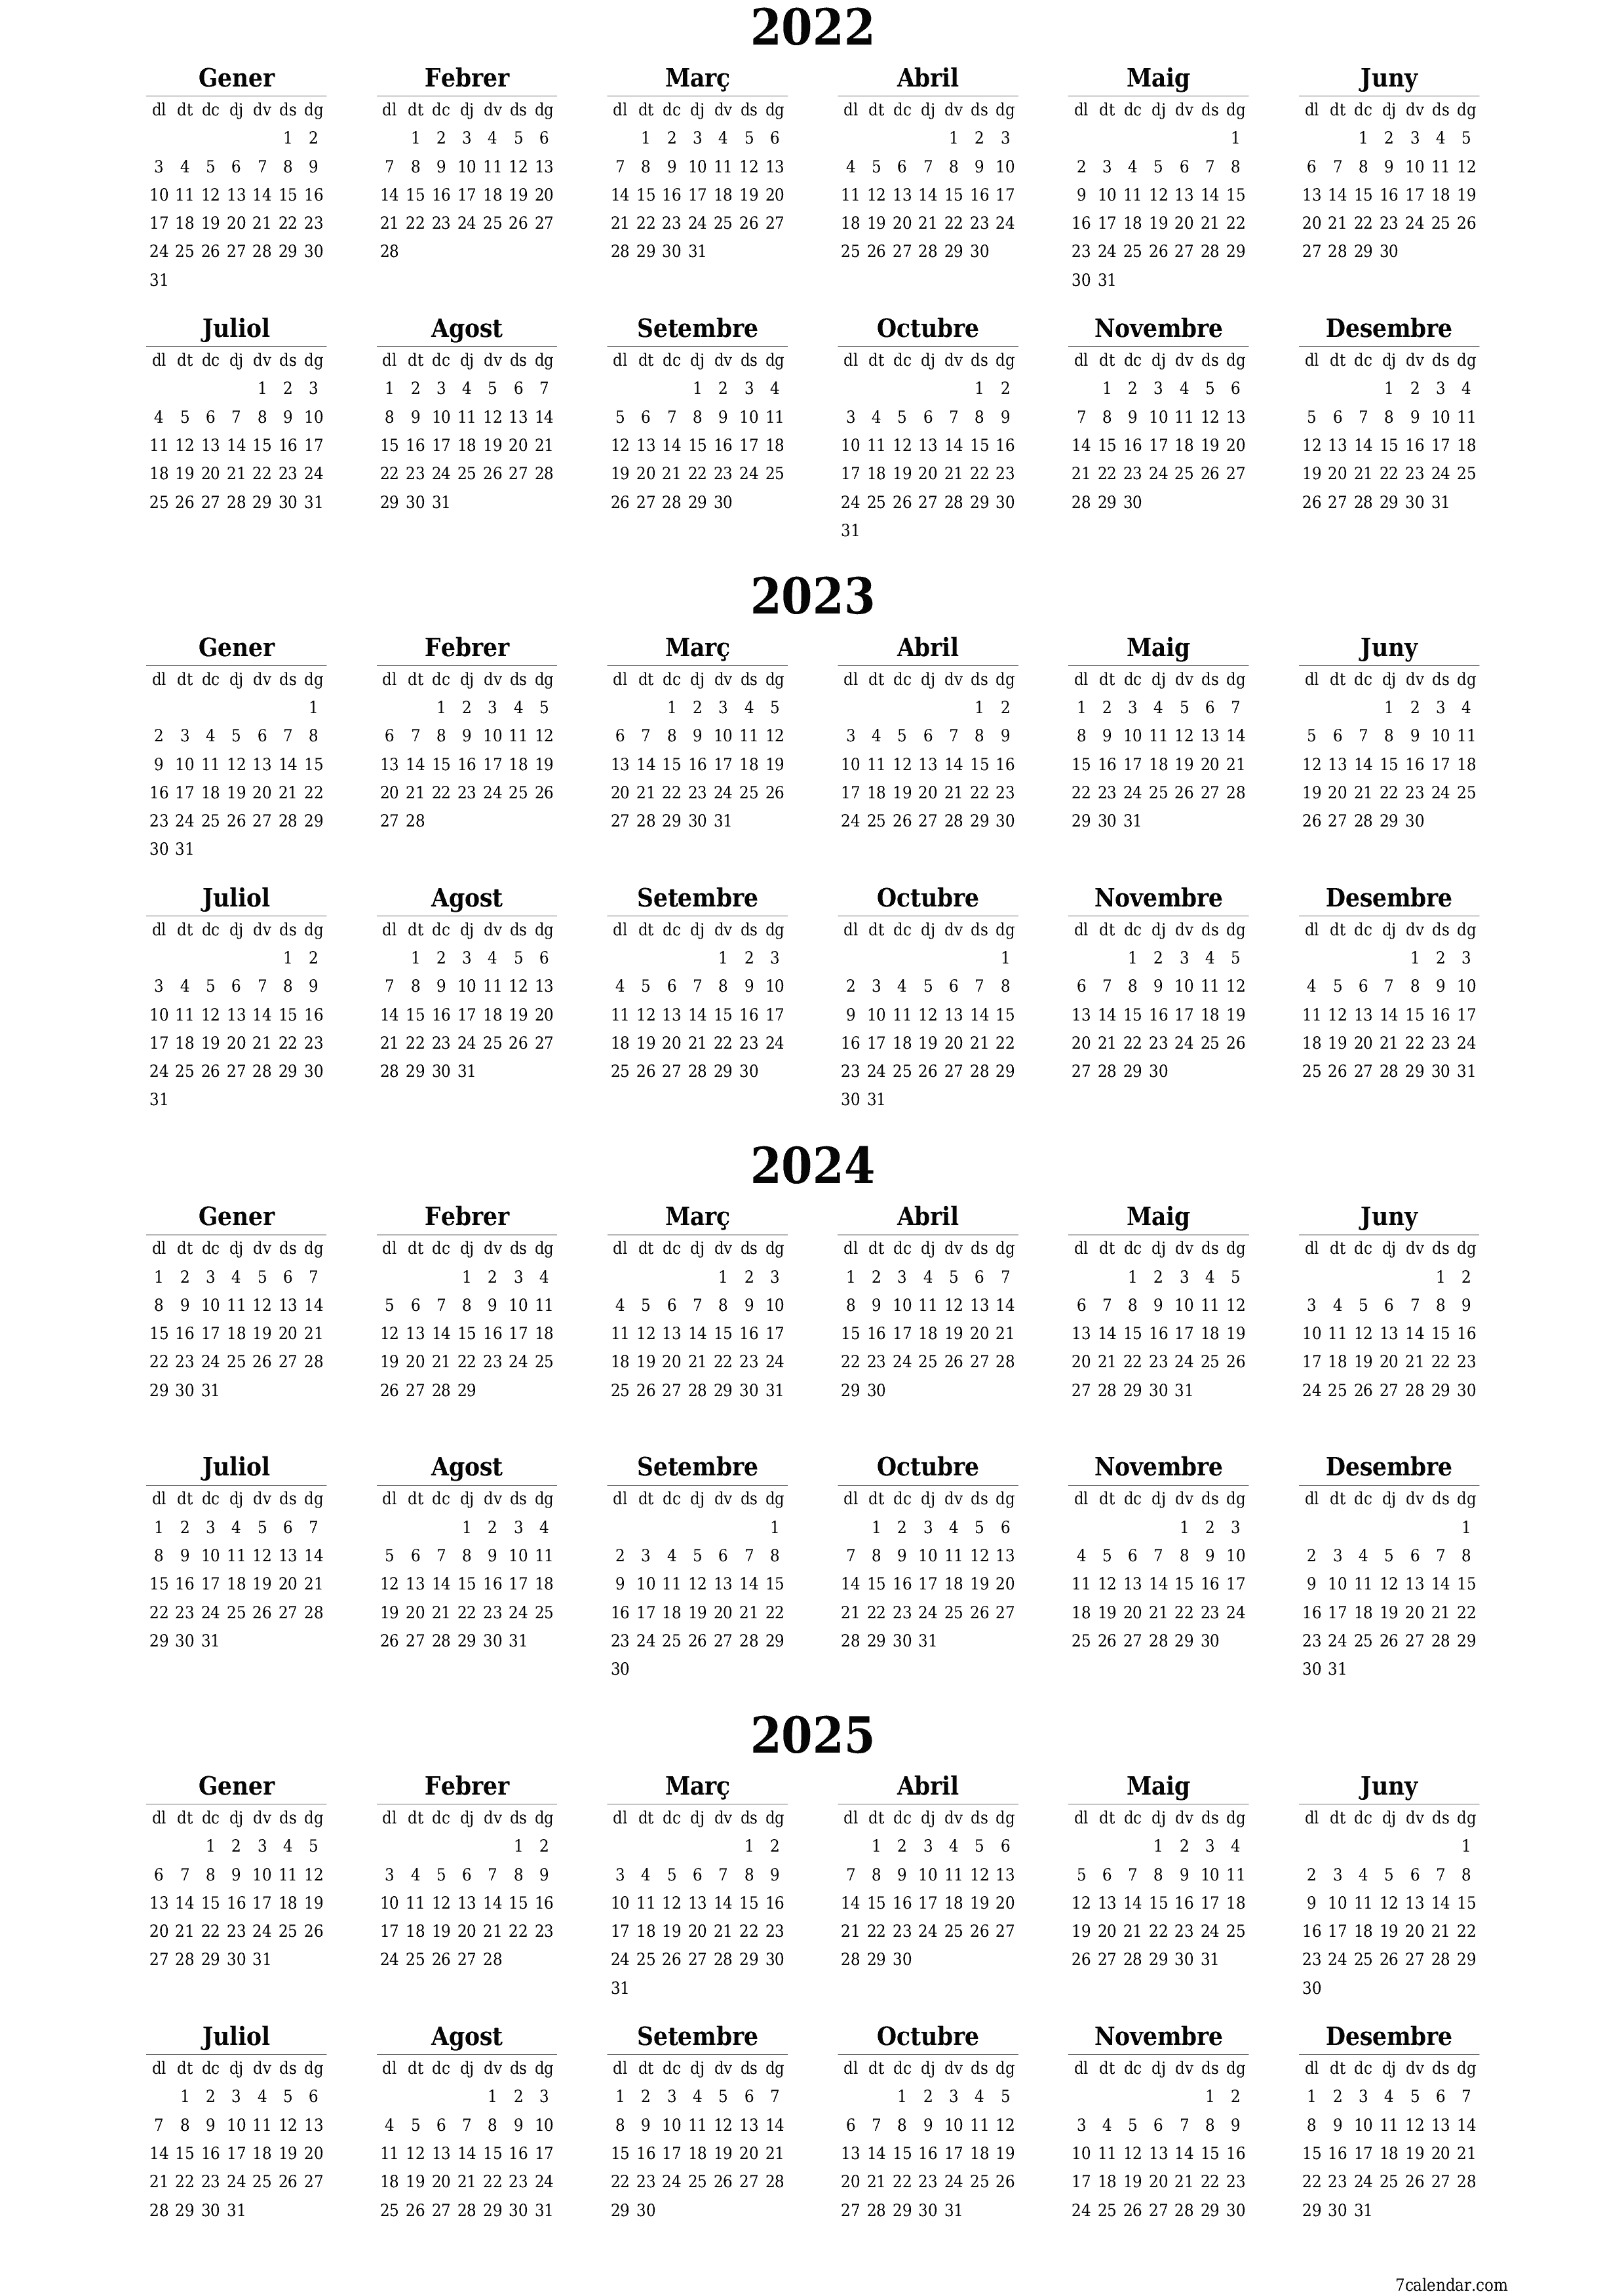  imprimible de paret plantilla de gratuïtvertical Anual calendari Desembre (Des) 2022